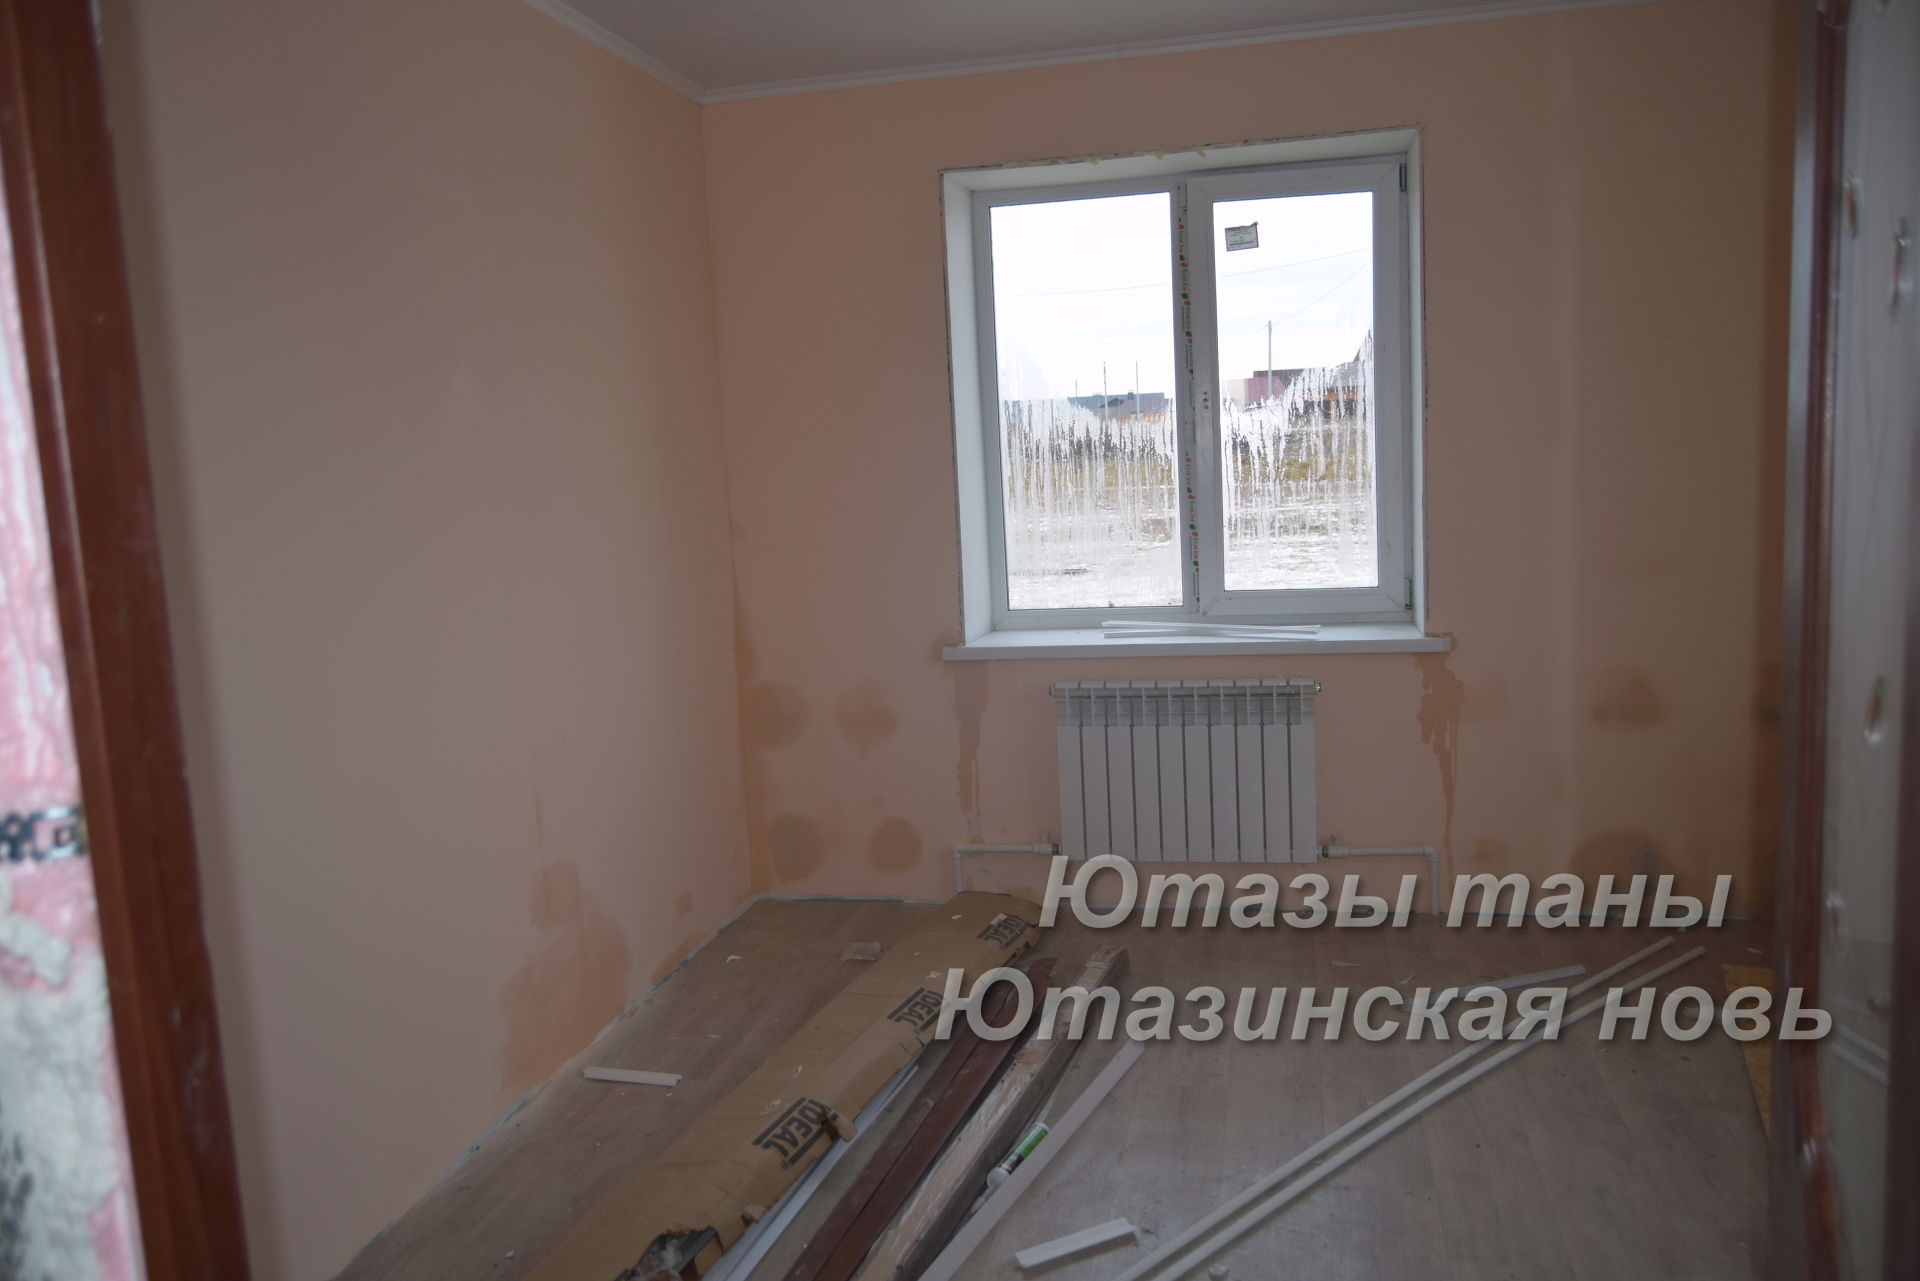 Для сельчан Ютазинского района строят новые дома